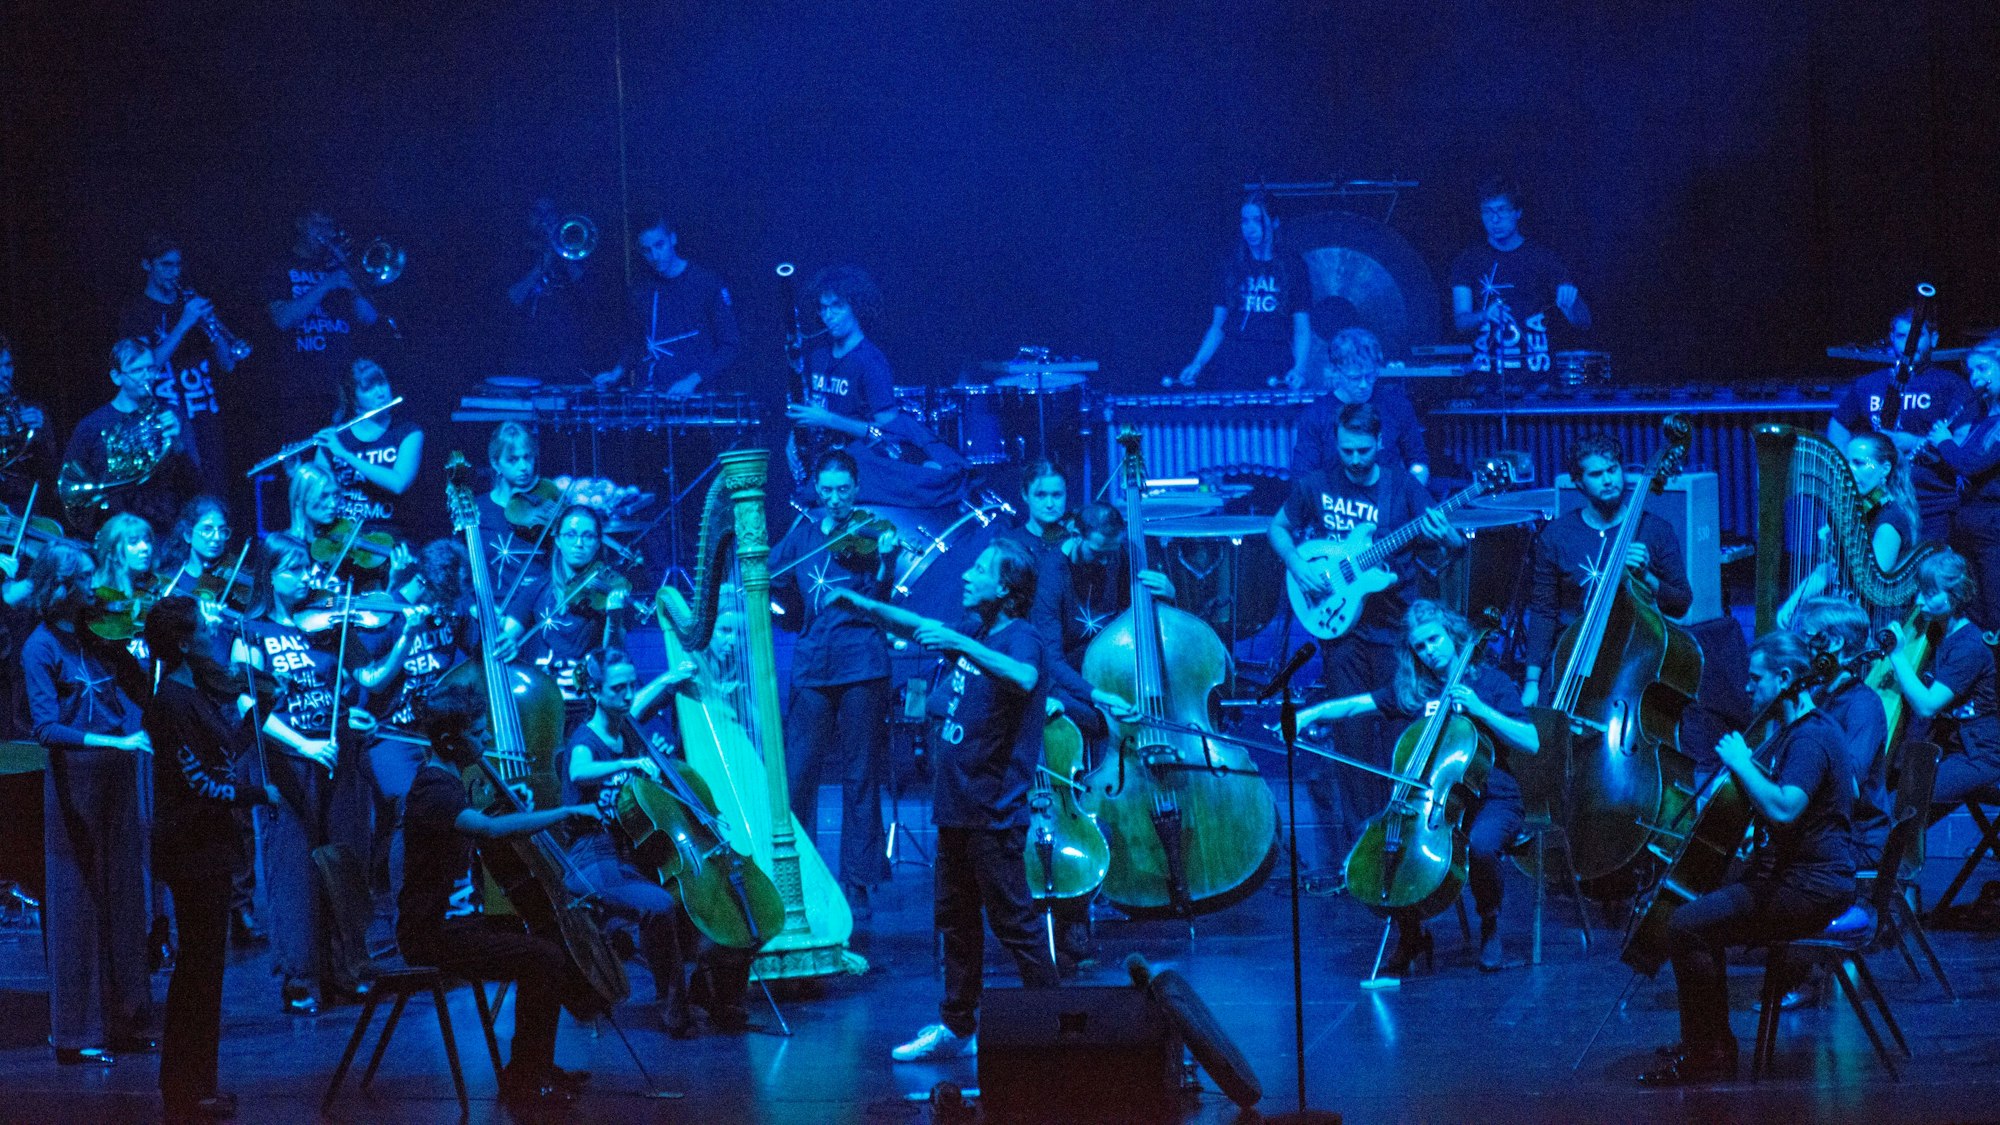 Die Bühne ist dunkel und bläulich erleuchtet. Darauf ist das Orchester, in der Mitte ein Dirigent.